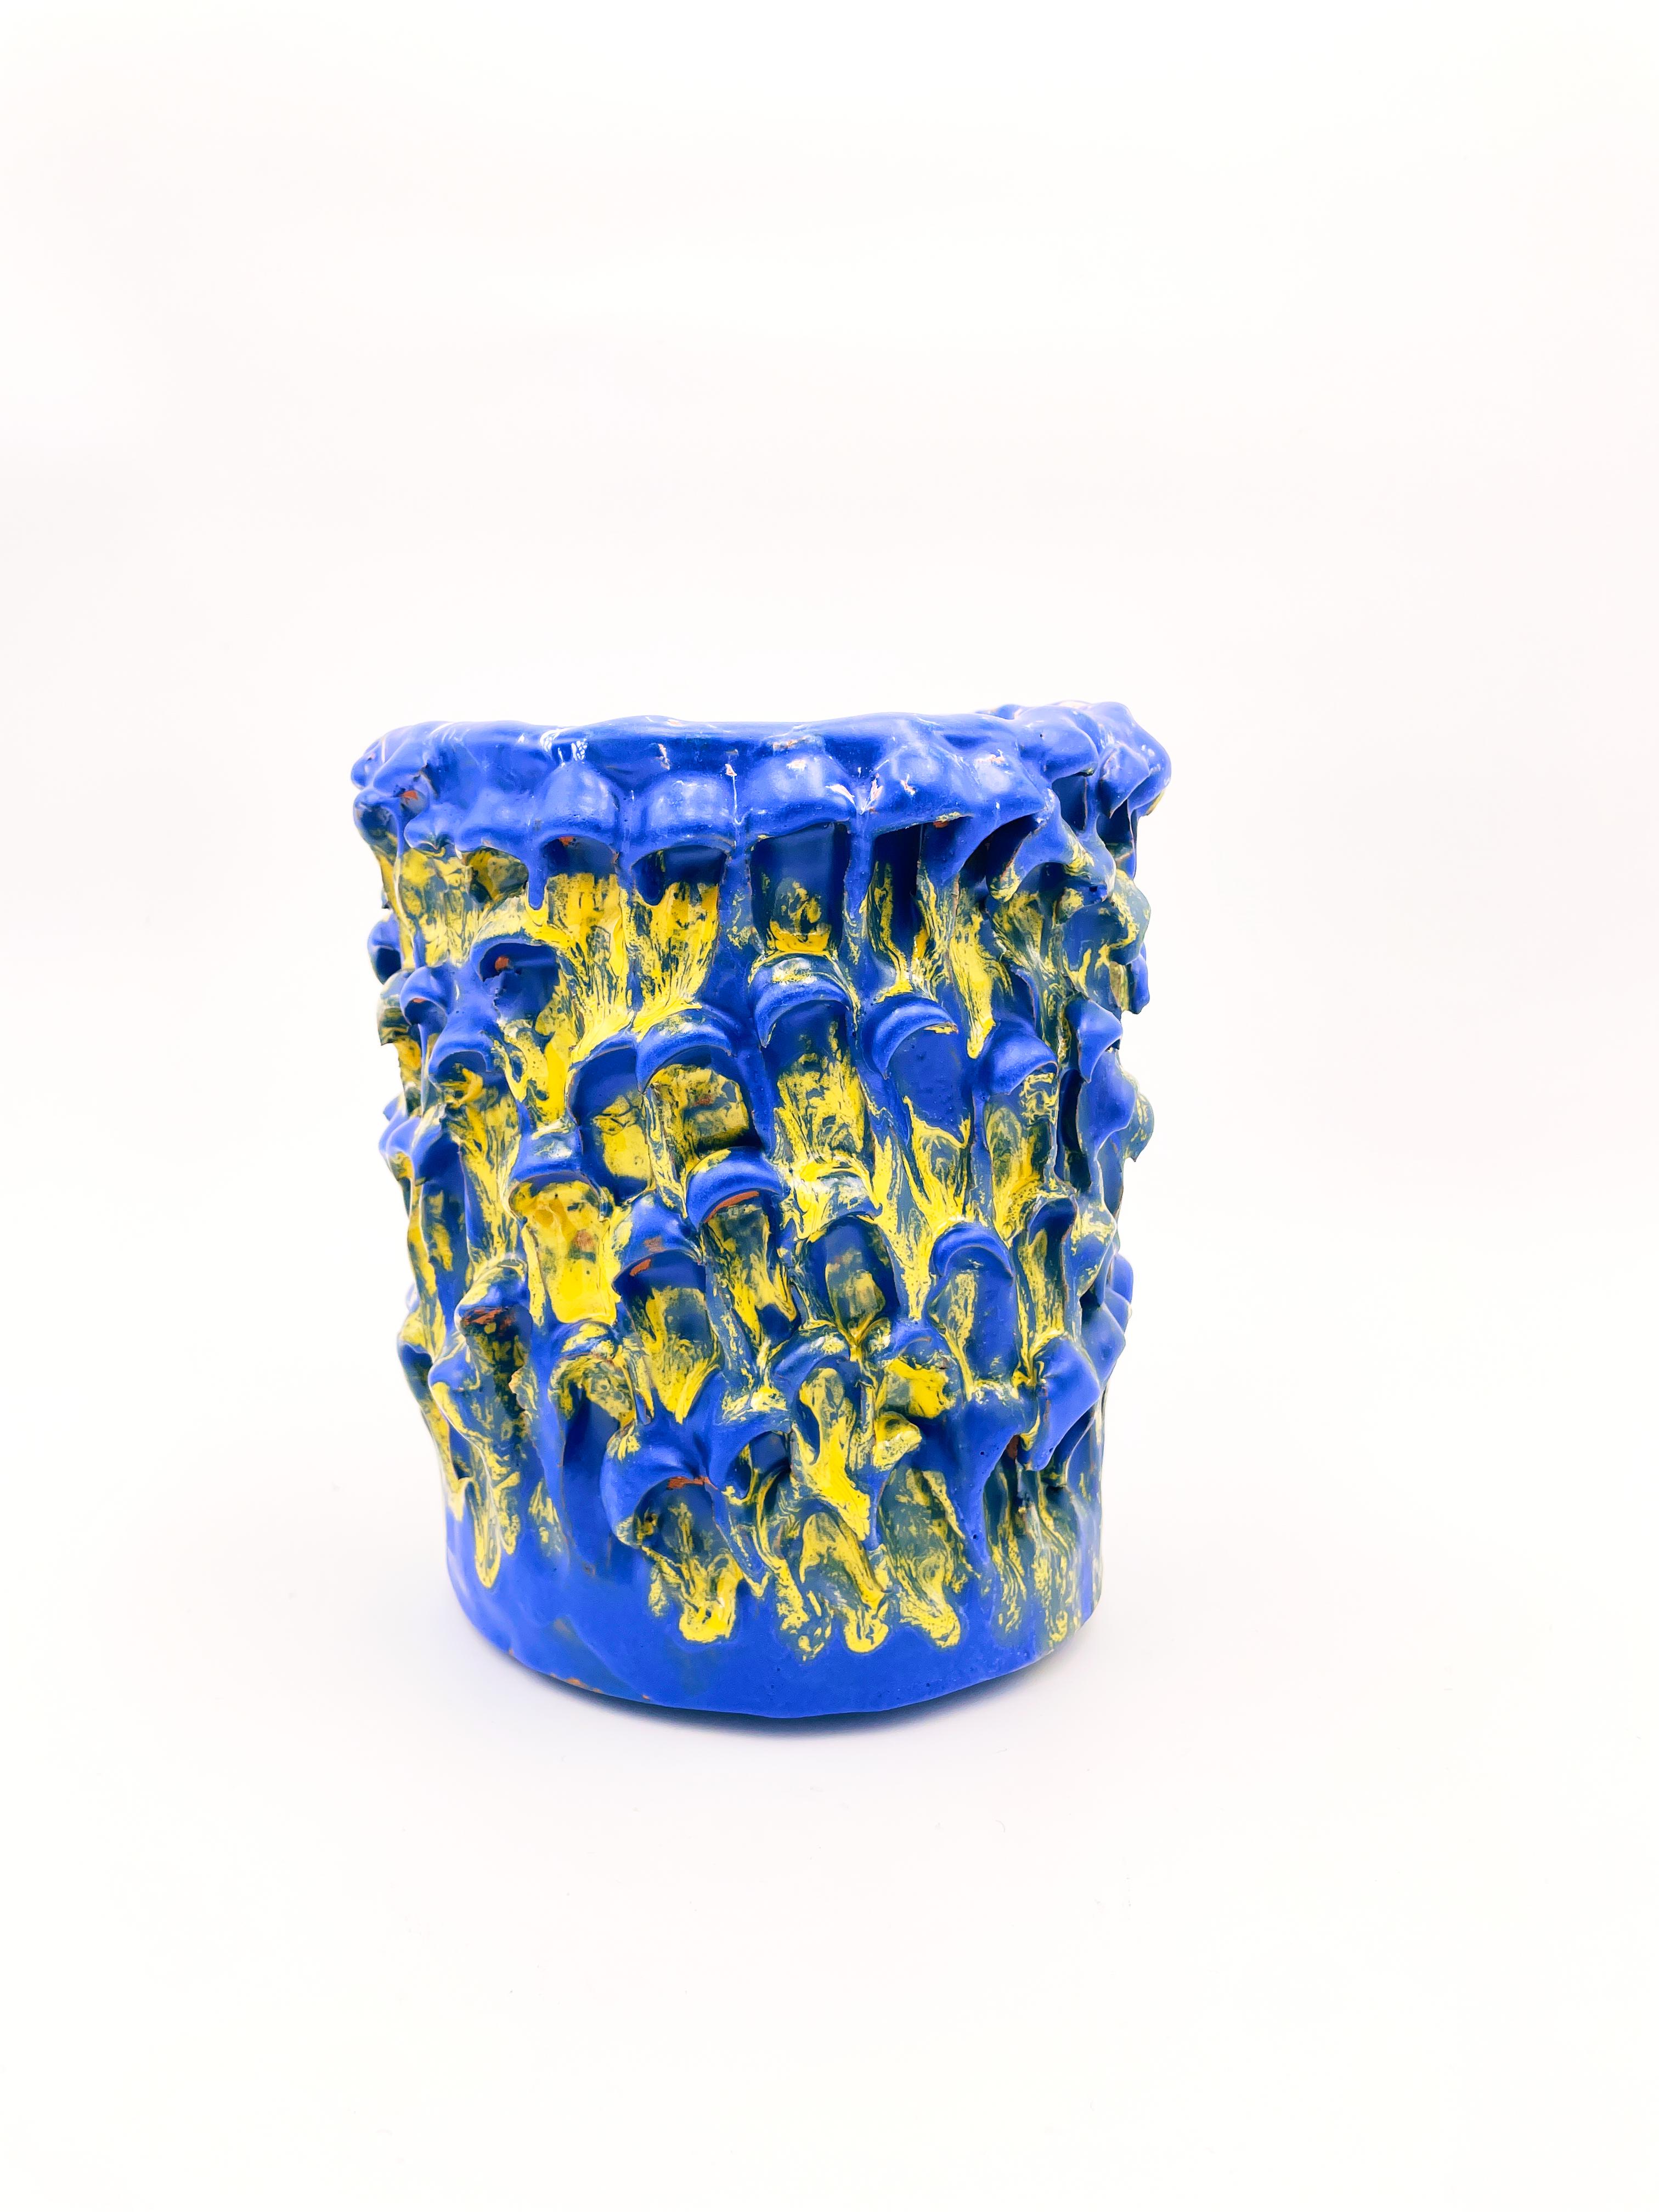 Vase Onda en bleu égyptien et jaune tournesol 01 /20 série numérotée
Pièce unique faite à la main
Faïence émaillée de Daria Dazzan
Faïence, émaux
18 X 20 cm ab.

Vase en faïence fait à la main par Daria Dazzan, pièce unique, numérotée.
Daria Dazzan